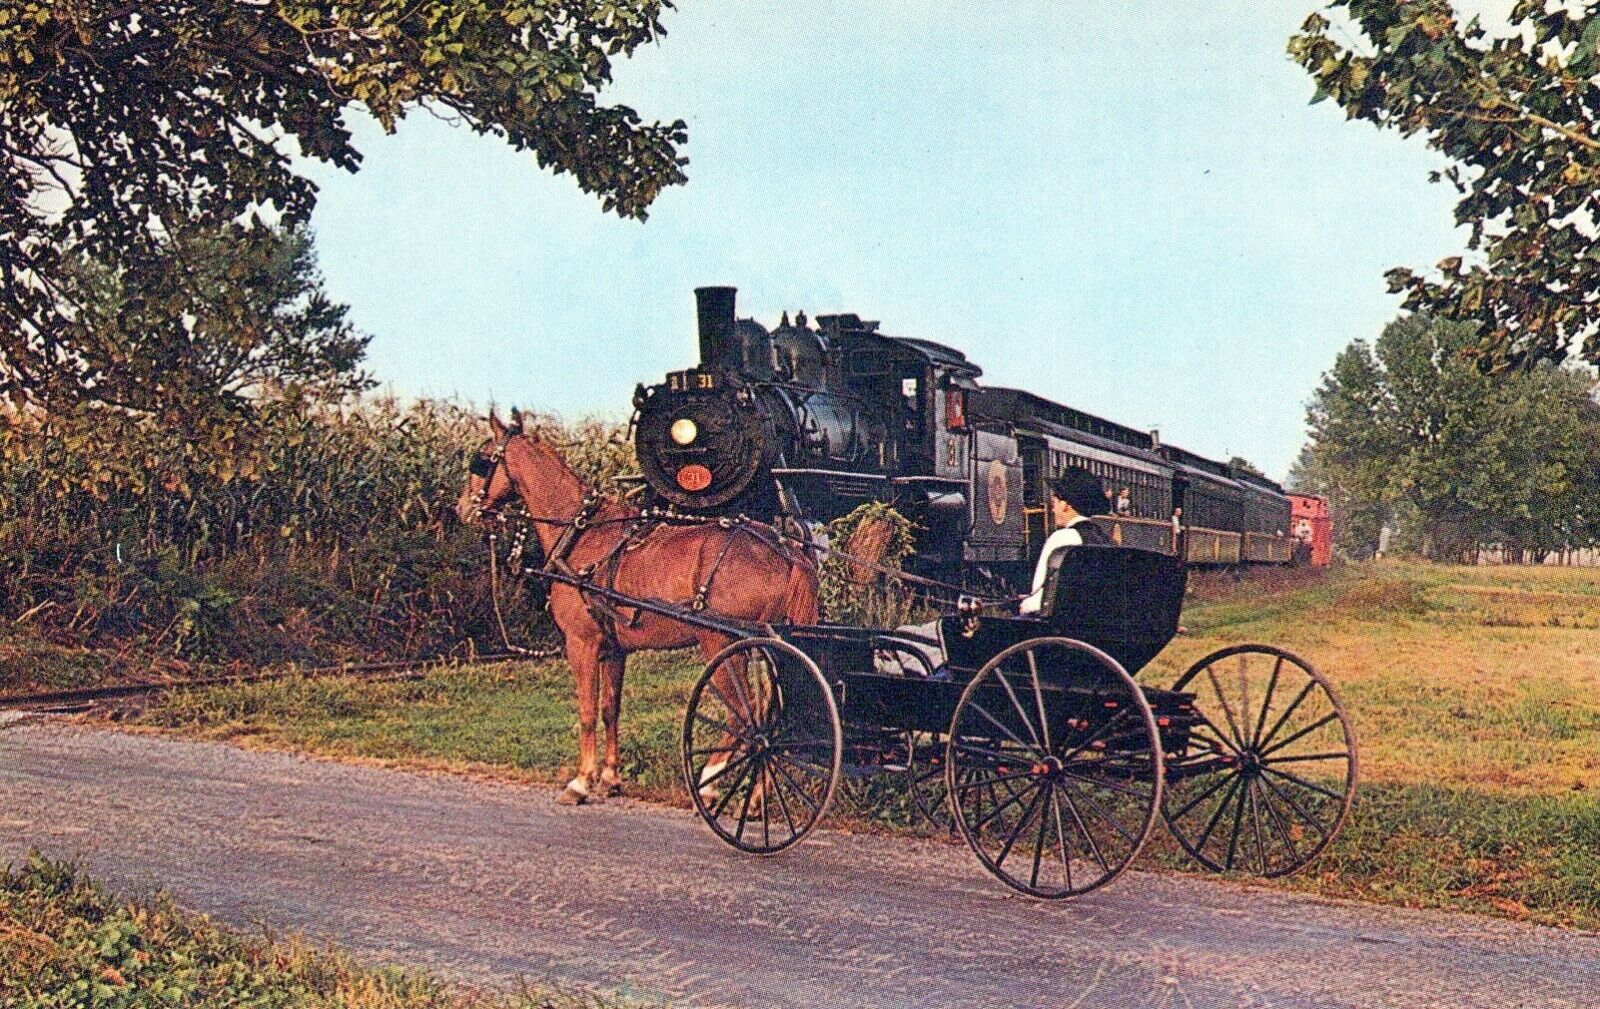 The Strasburg Railroad Route 741 Strasburg Pennsylvania Chrome Vintage Postcard